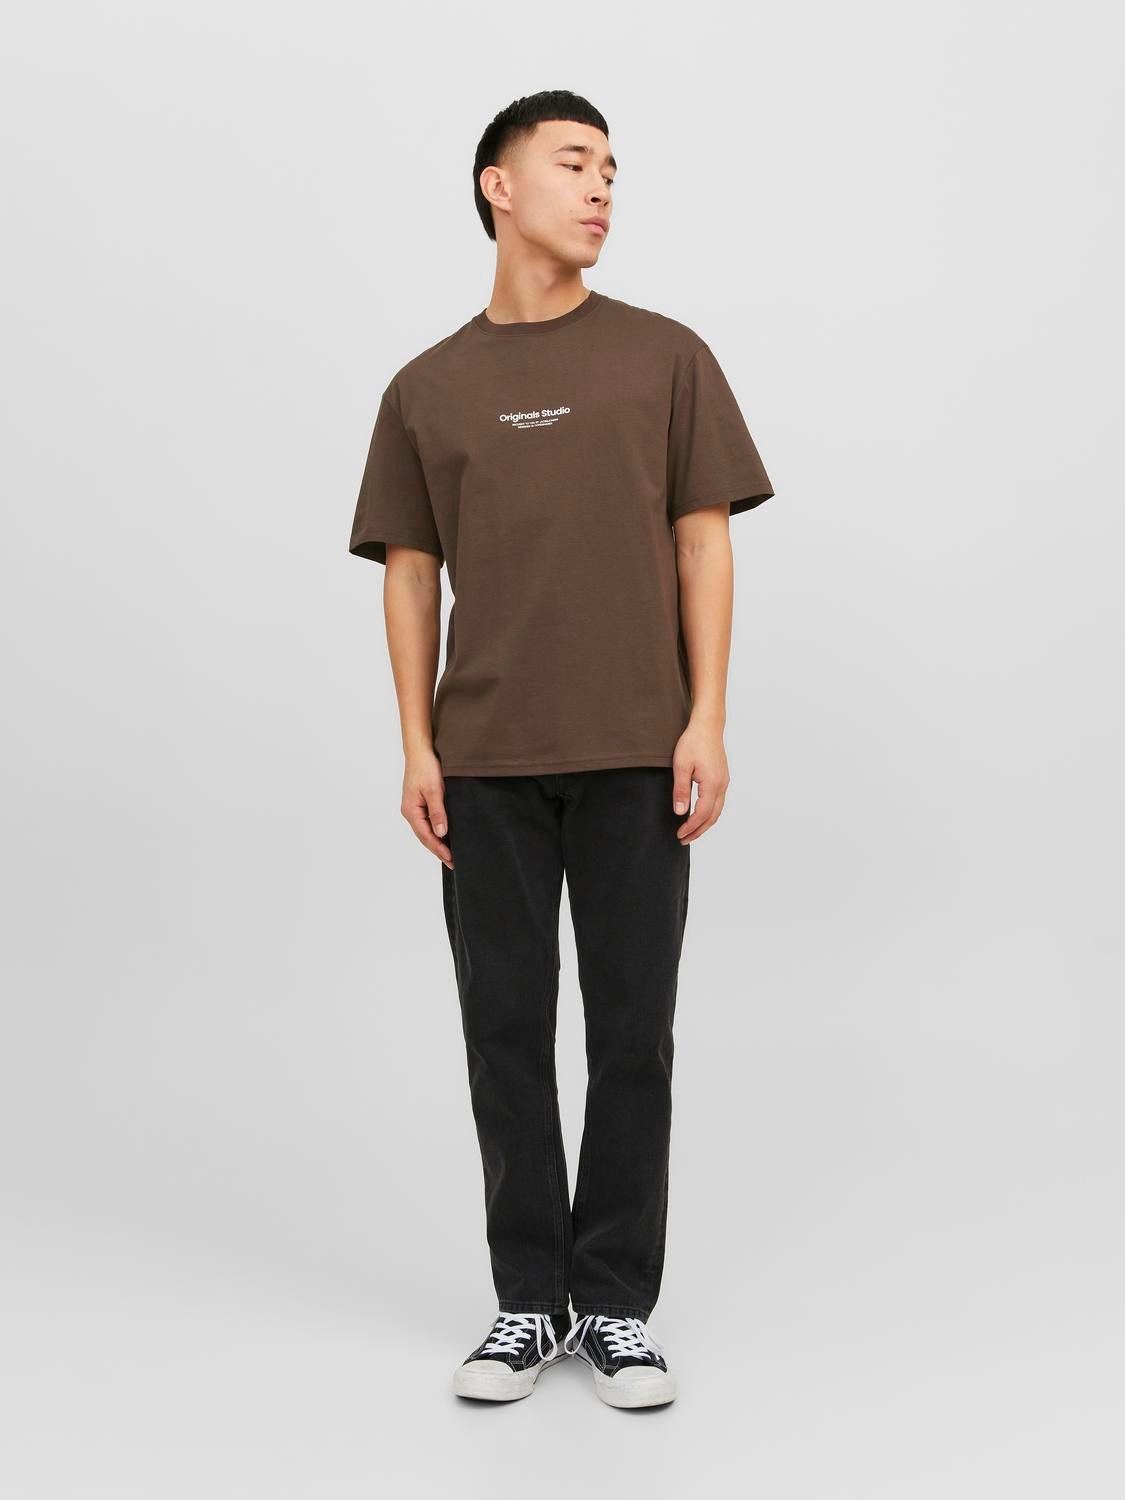 Jack & Jones Bedrukt Ronde hals T-shirt -Chocolate Brown - 12240121